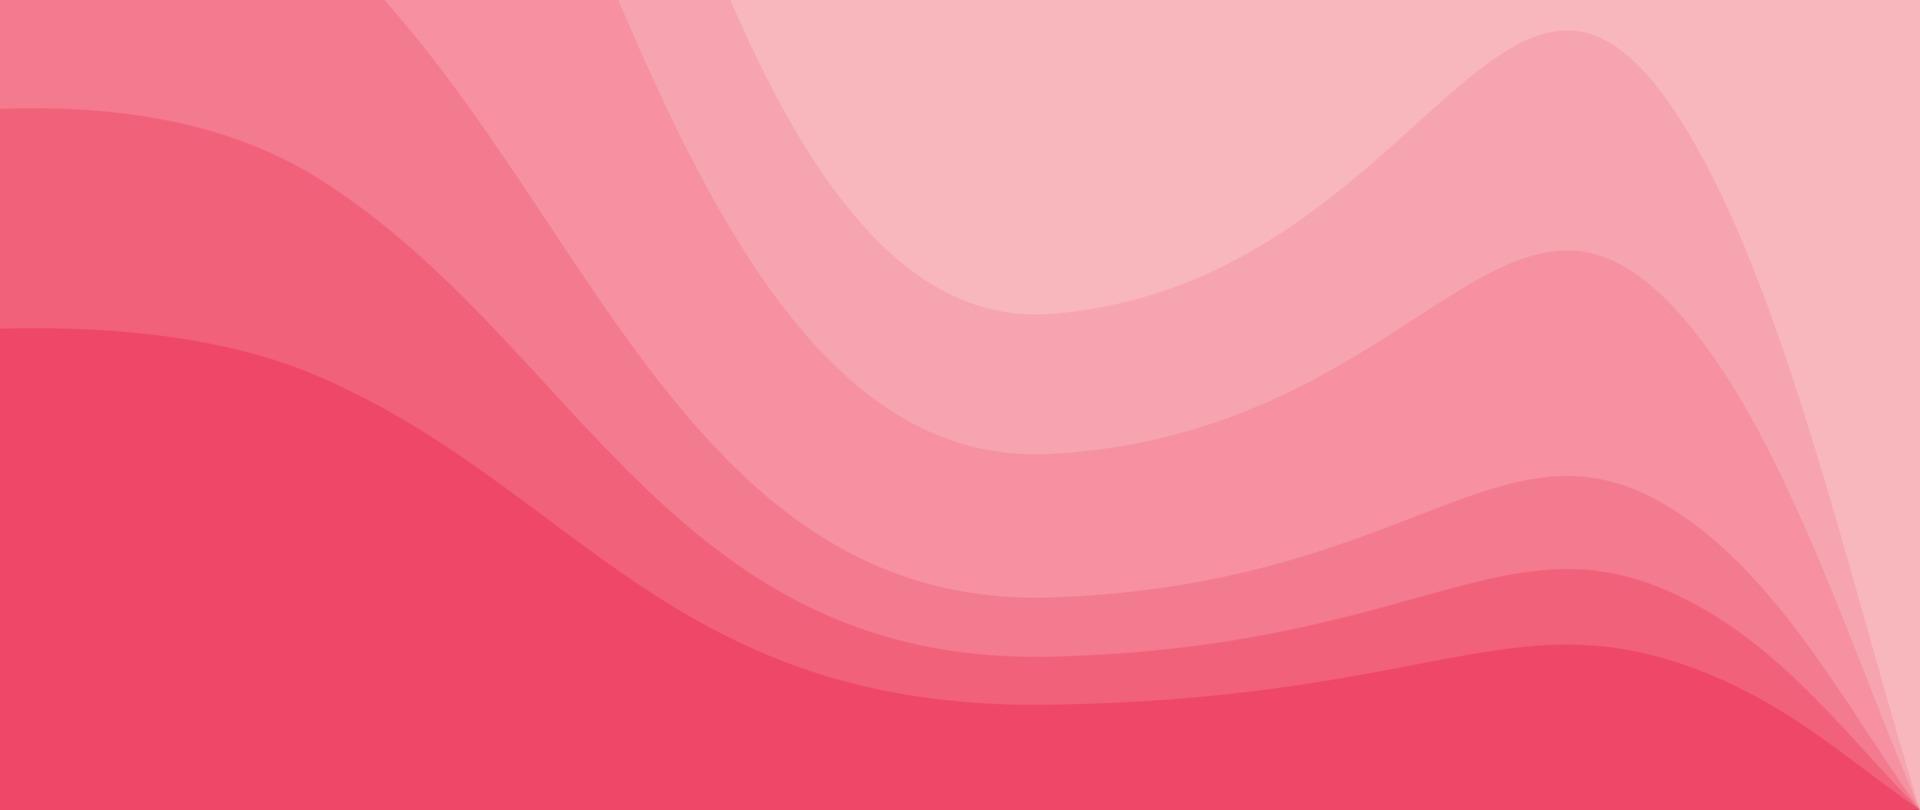 astratto sfondo monocromatico rosa vettore